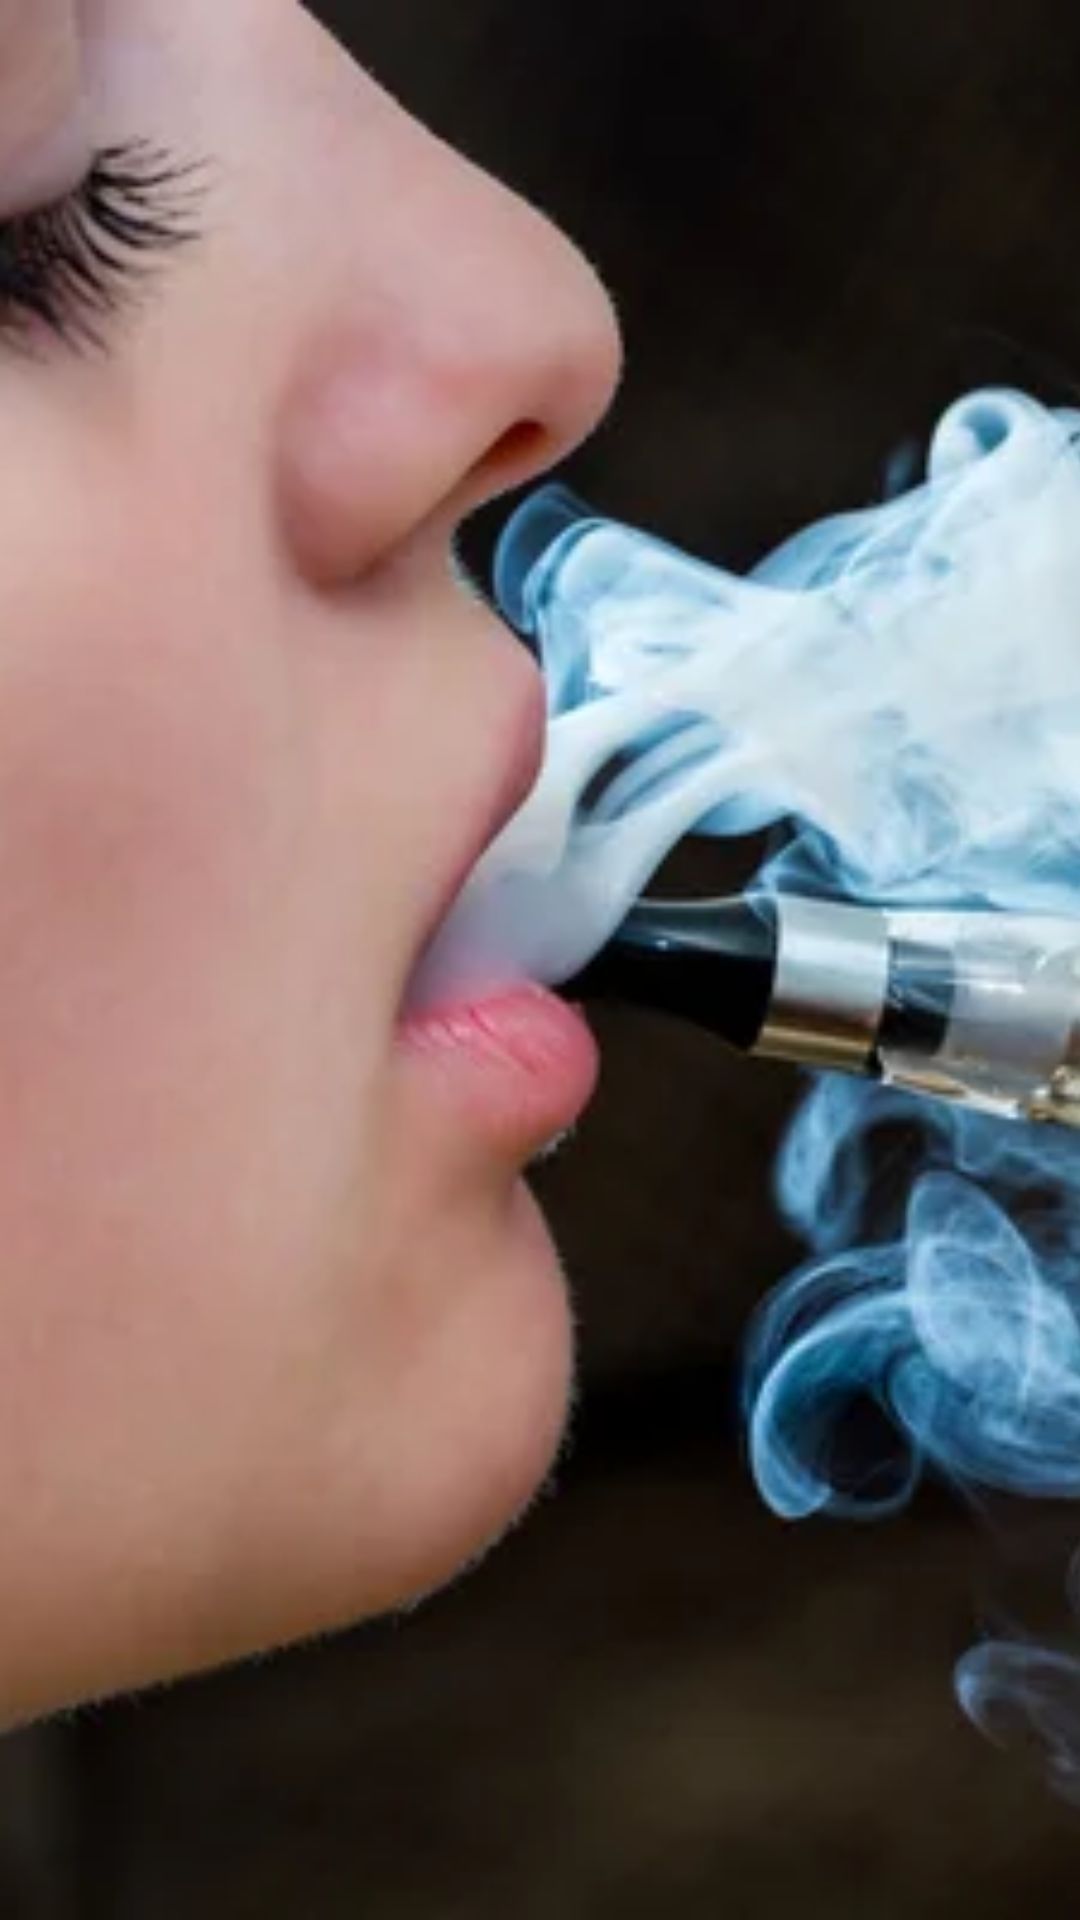 बिना तंबाकू के बने ई-सिगरेट से कितना नुकसान? जानें यह कैसे करता है काम 